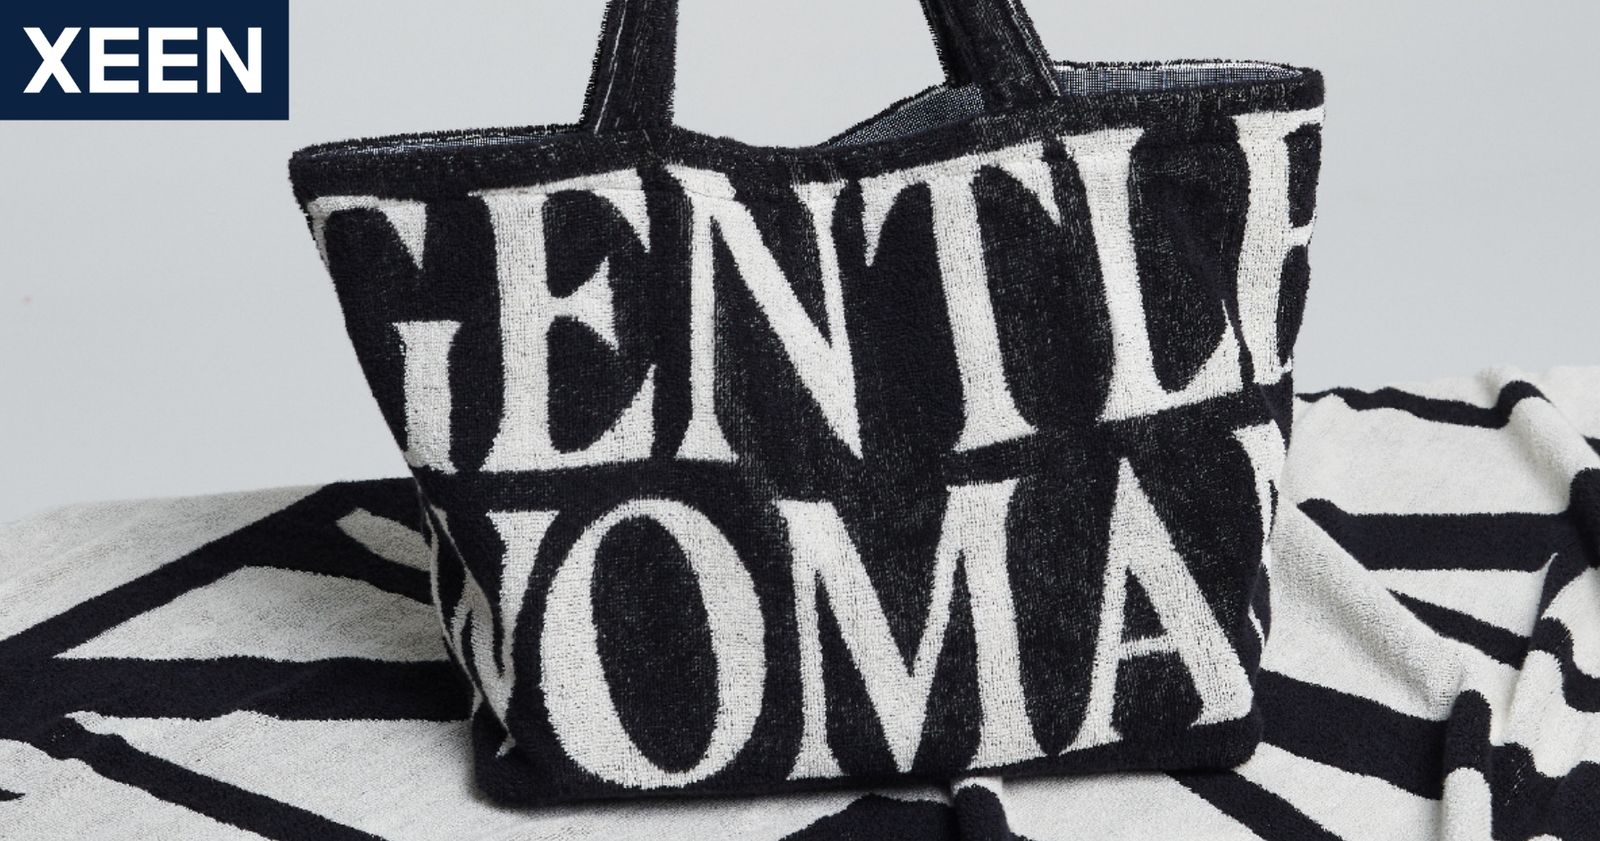 ประวัติ Gentlewoman เจ้าของแบรนด์กระเป๋าผ้า ที่ฮิตไปทั่วประเทศ